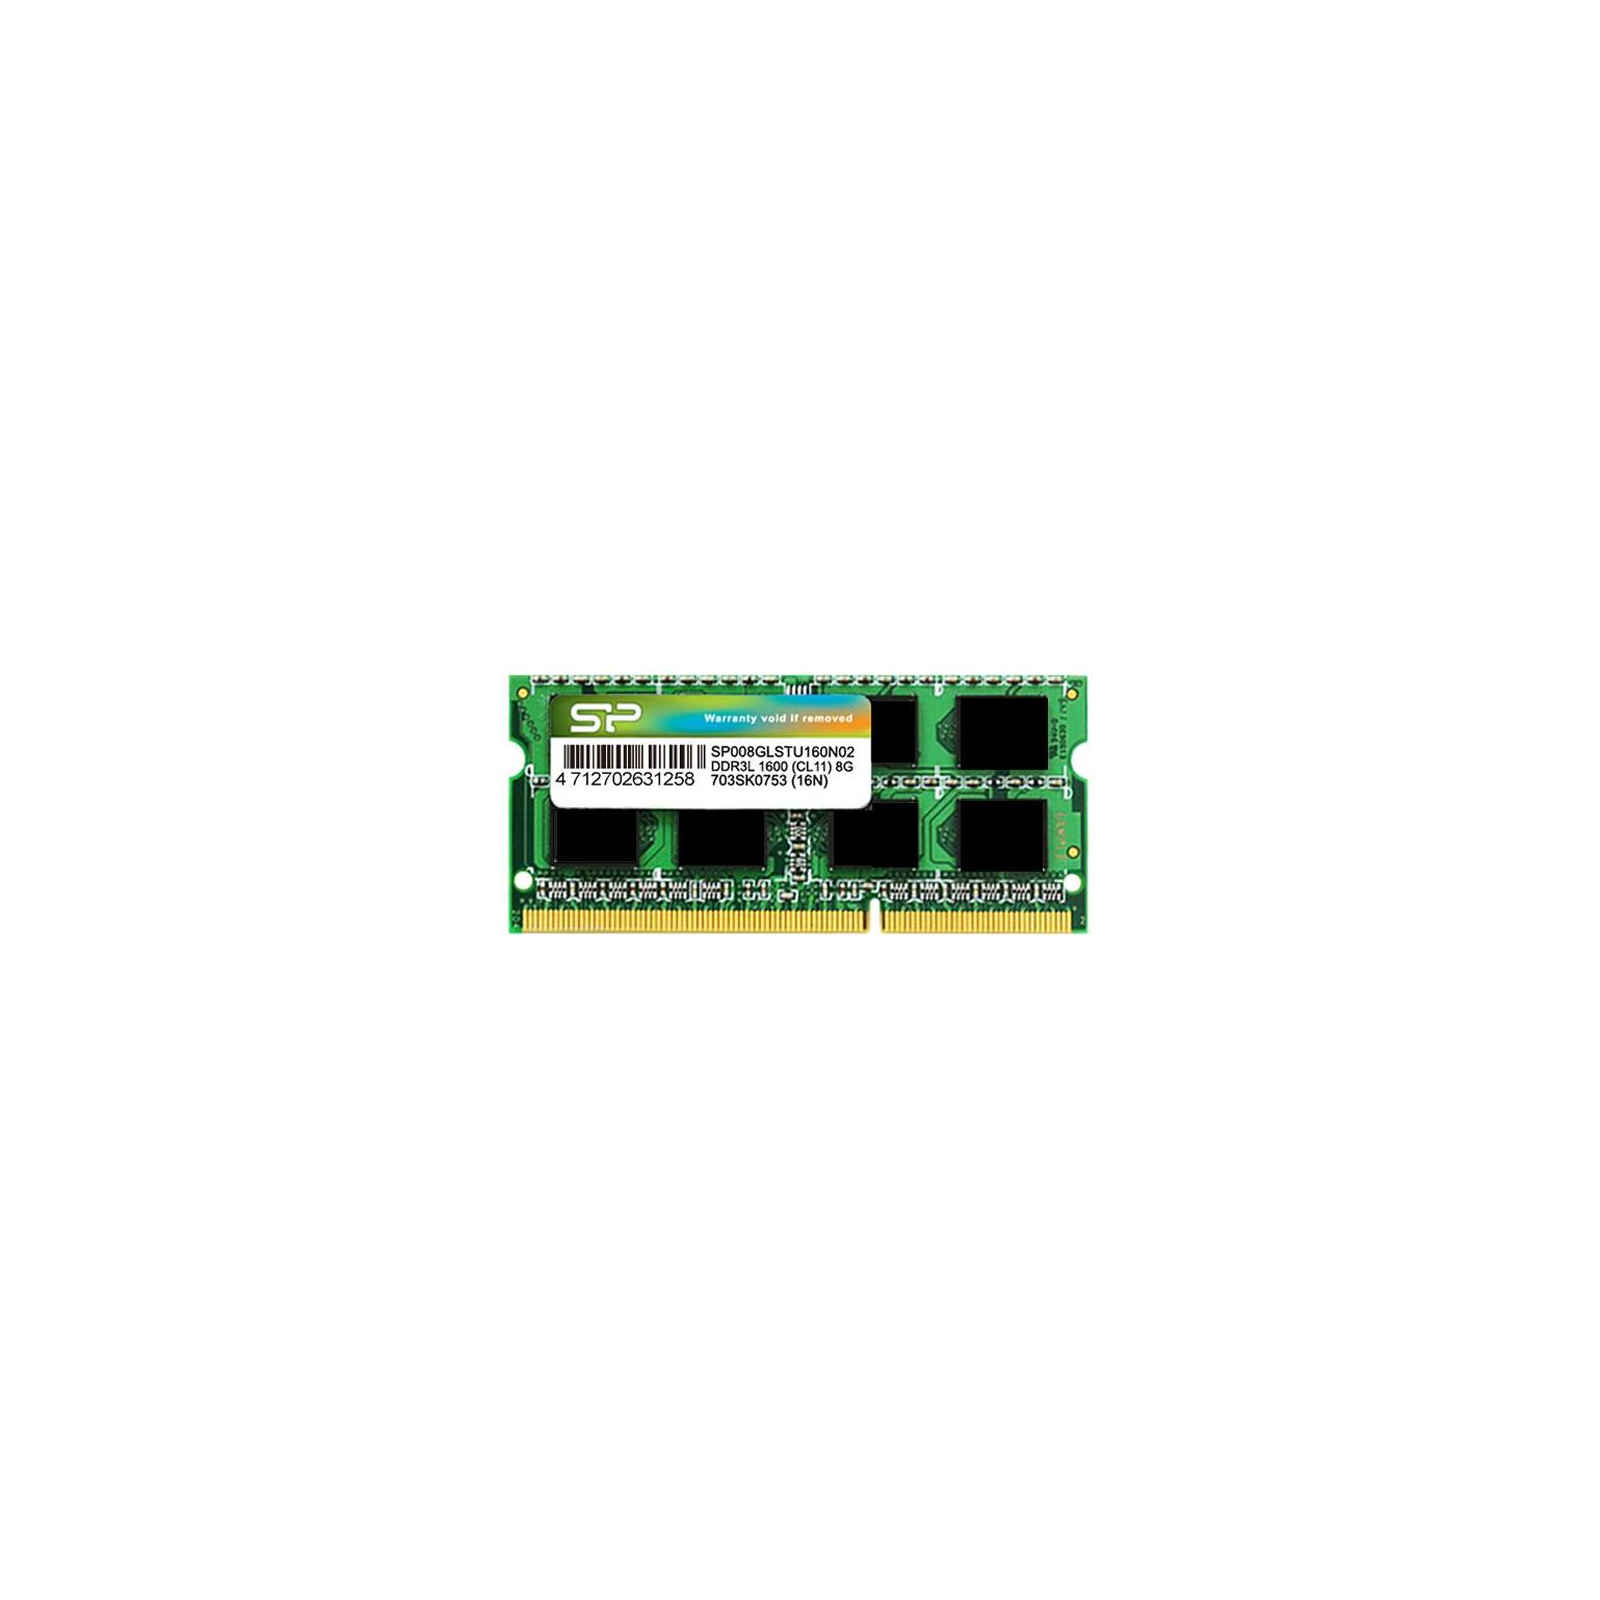 Модуль памяти для ноутбука SoDIMM DDR3 2GB 1600 MHz Silicon Power (SP002GLSTU160V02)